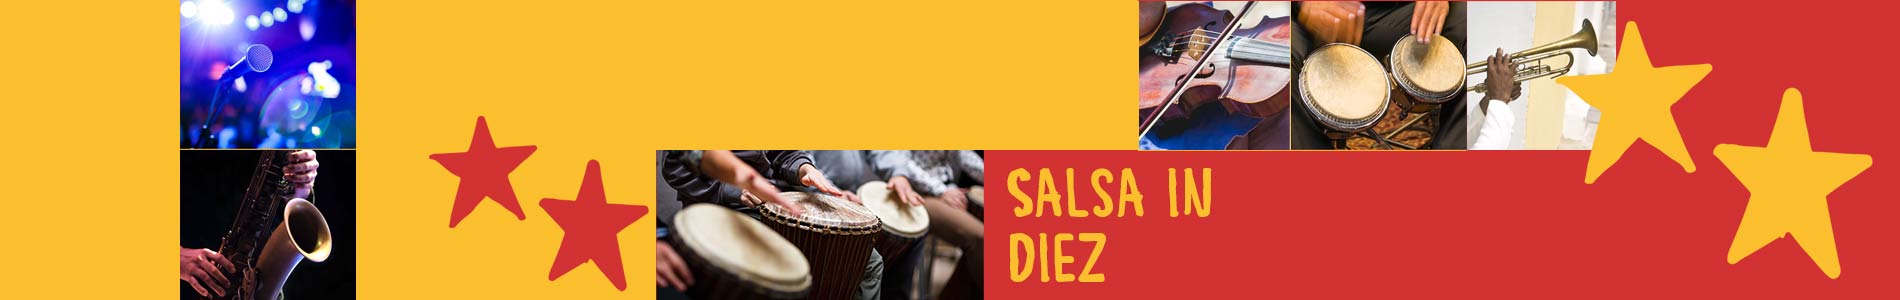 Salsa in Diez – Salsa lernen und tanzen, Tanzkurse, Partys, Veranstaltungen